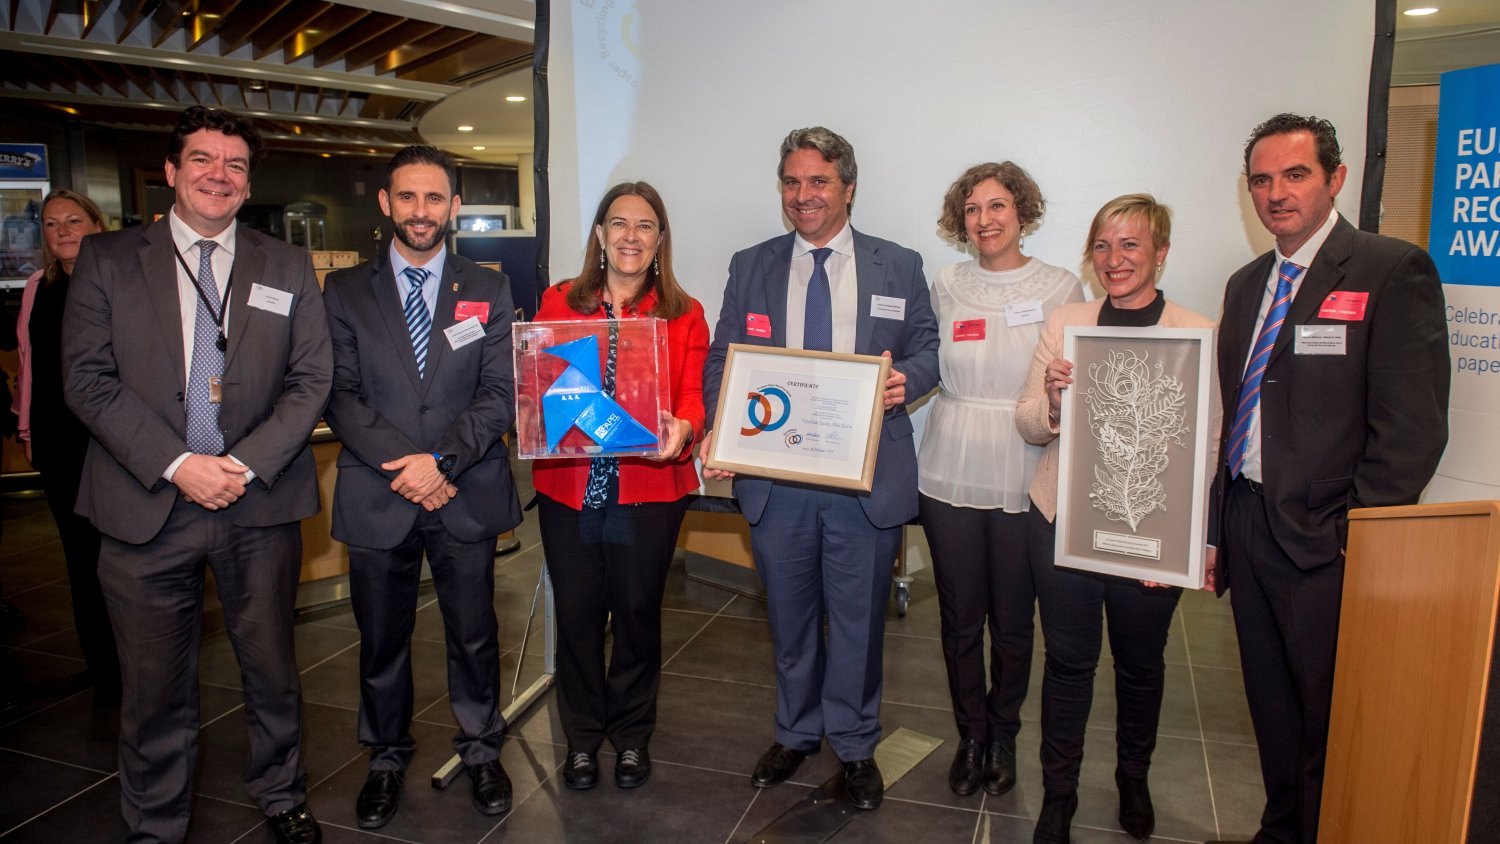 La Mancomunidad, en los “European Paper Recycling Award” por sus resultados en reciclaje de papel